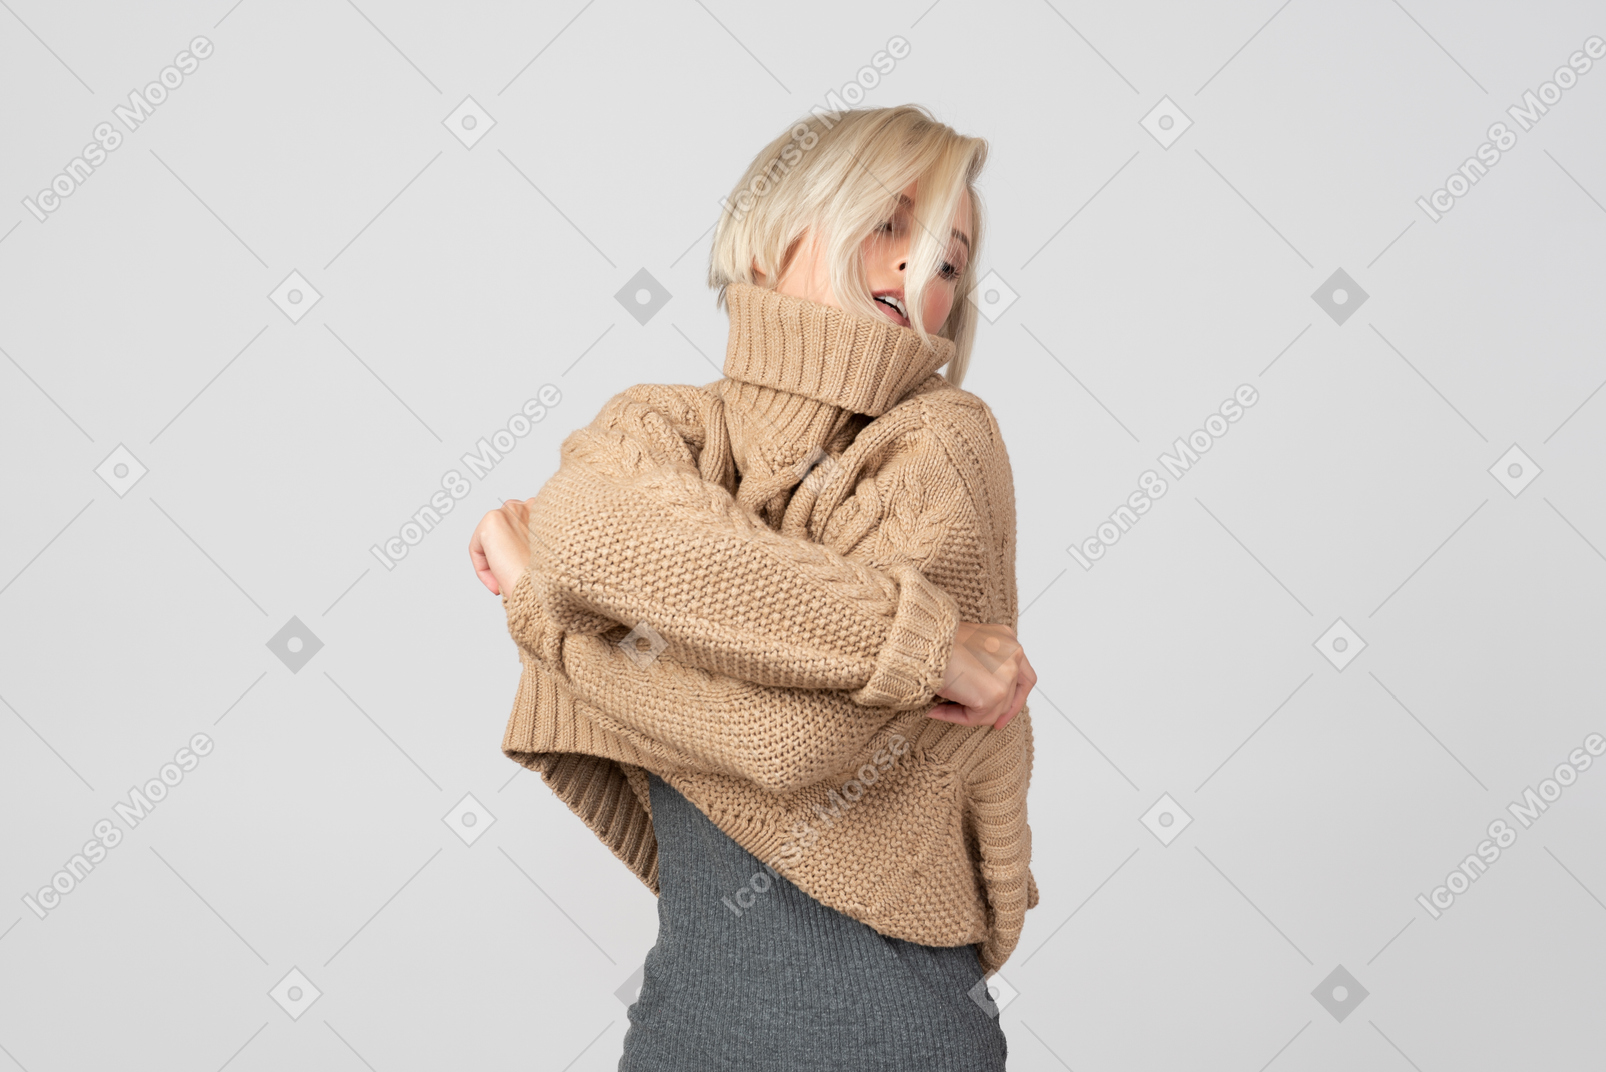 Dieser pullover ist viel zu warm